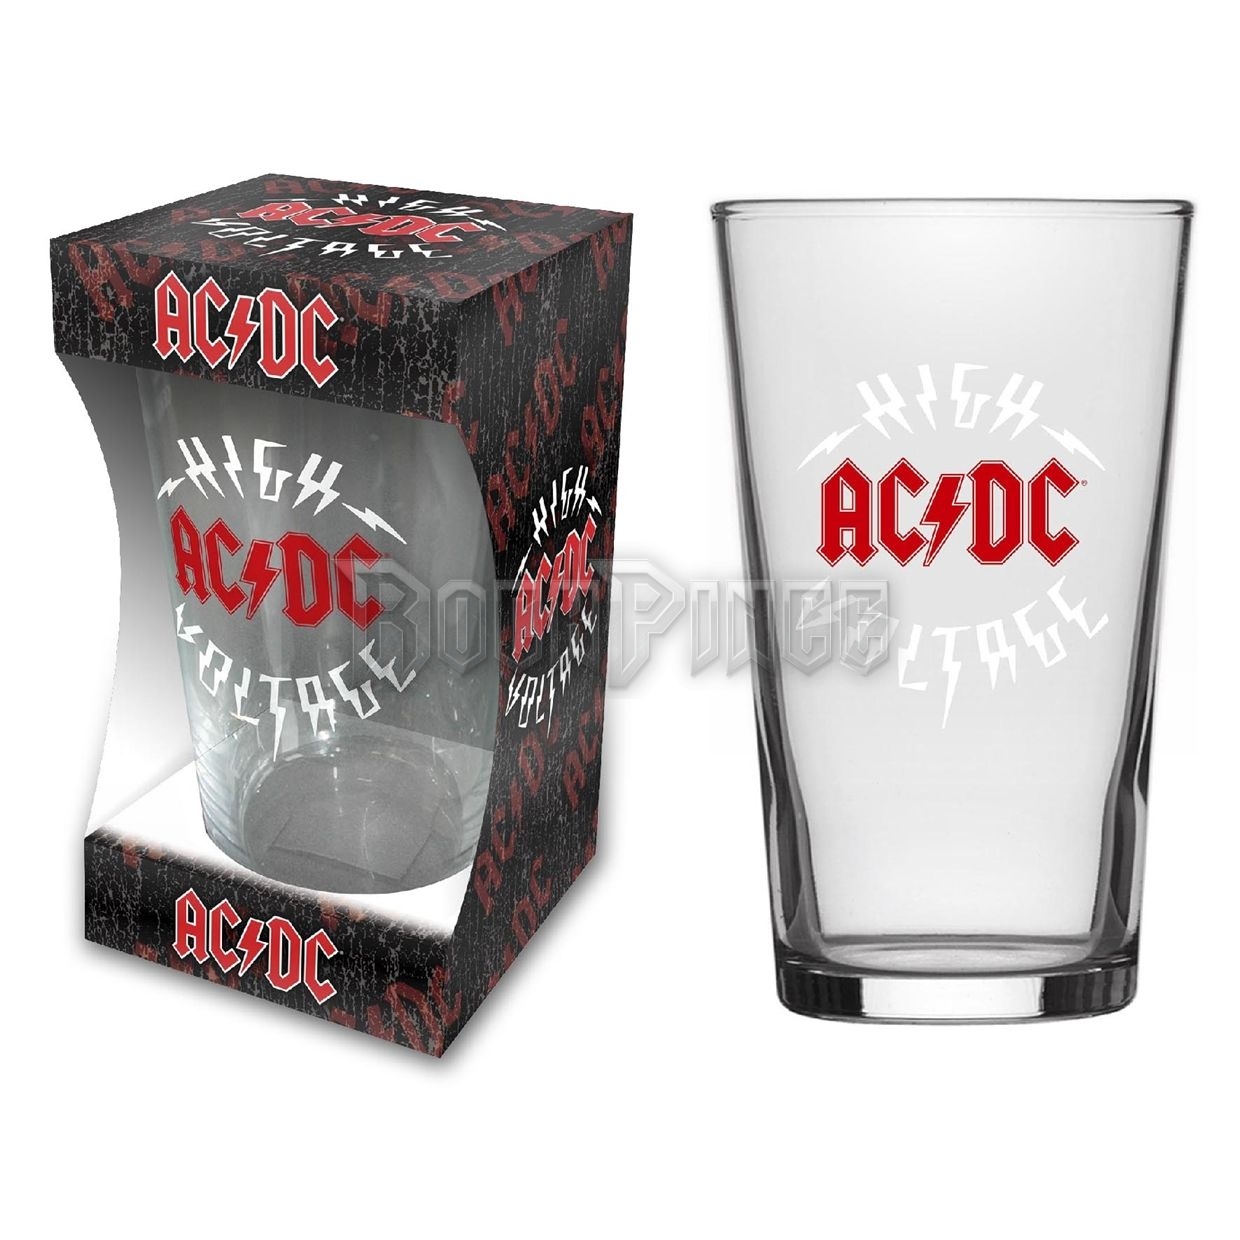 AC/DC - HIGH VOLTAGE - söröspohár - BG033